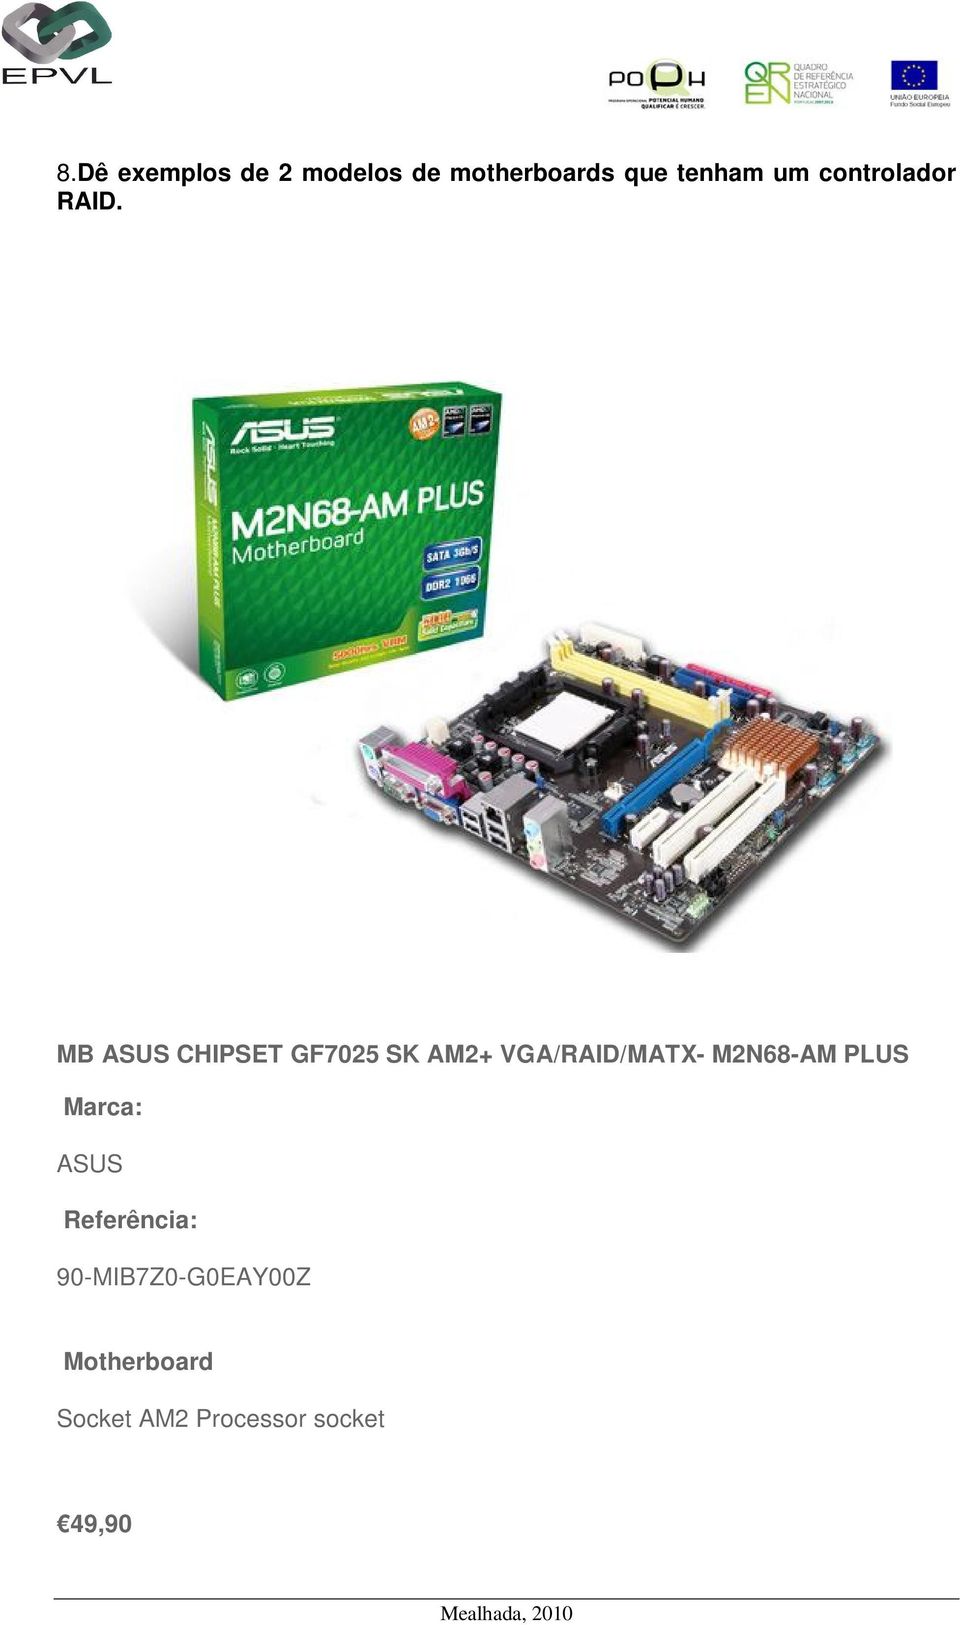 MB ASUS CHIPSET GF7025 SK AM2+ VGA/RAID/MATX- M2N68-AM